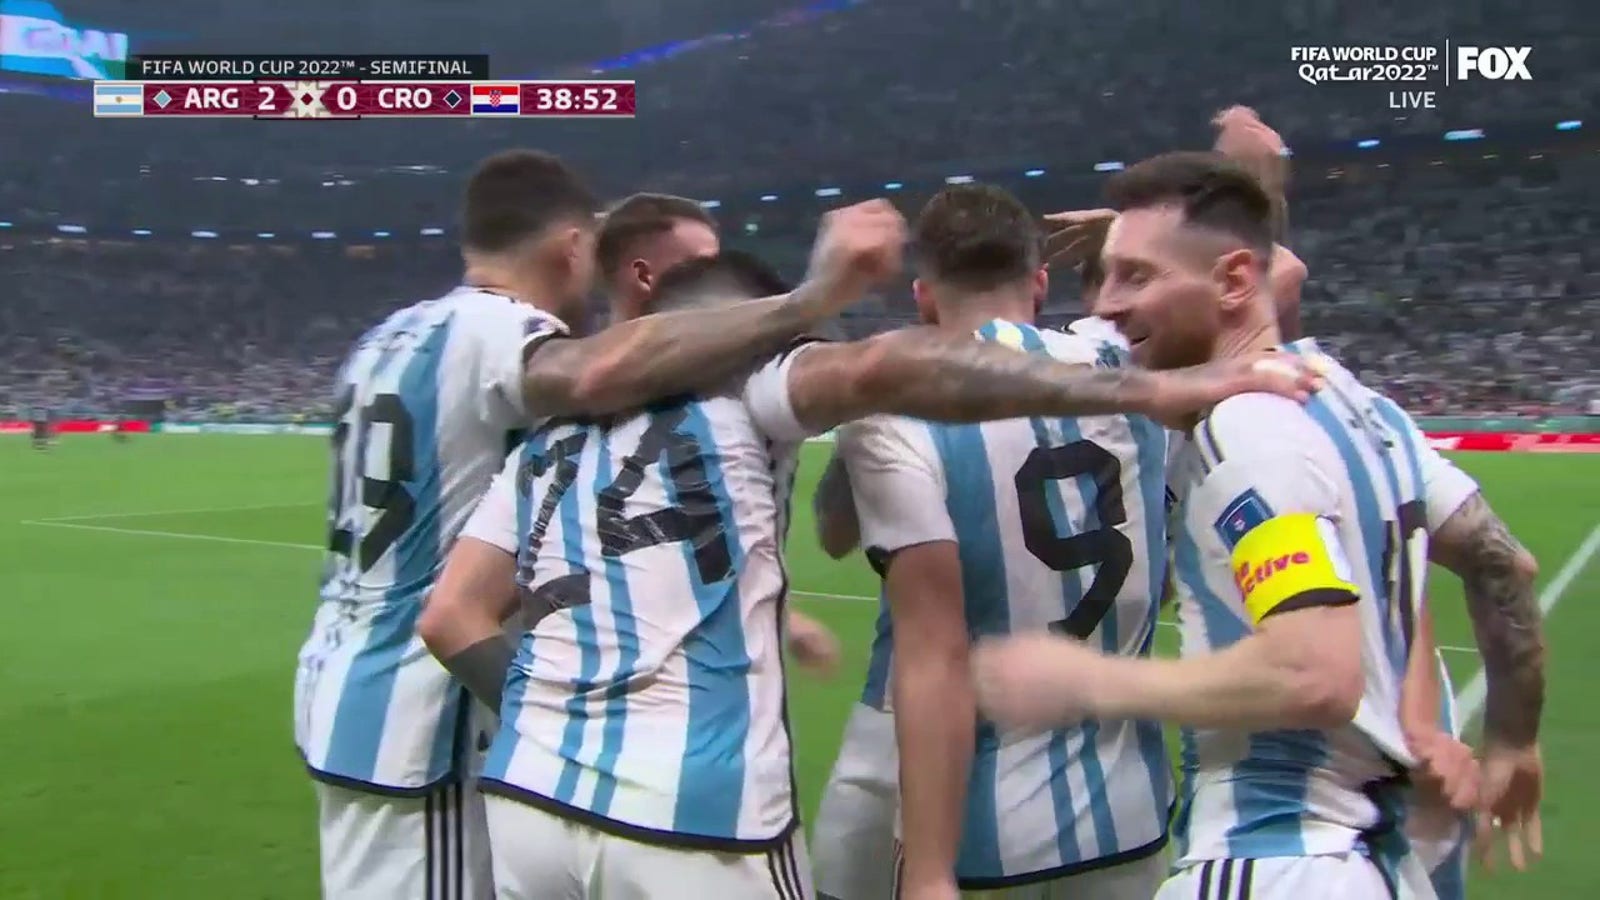 Argentina's Julian Alvarez scores goal vs. Croatia in 39'